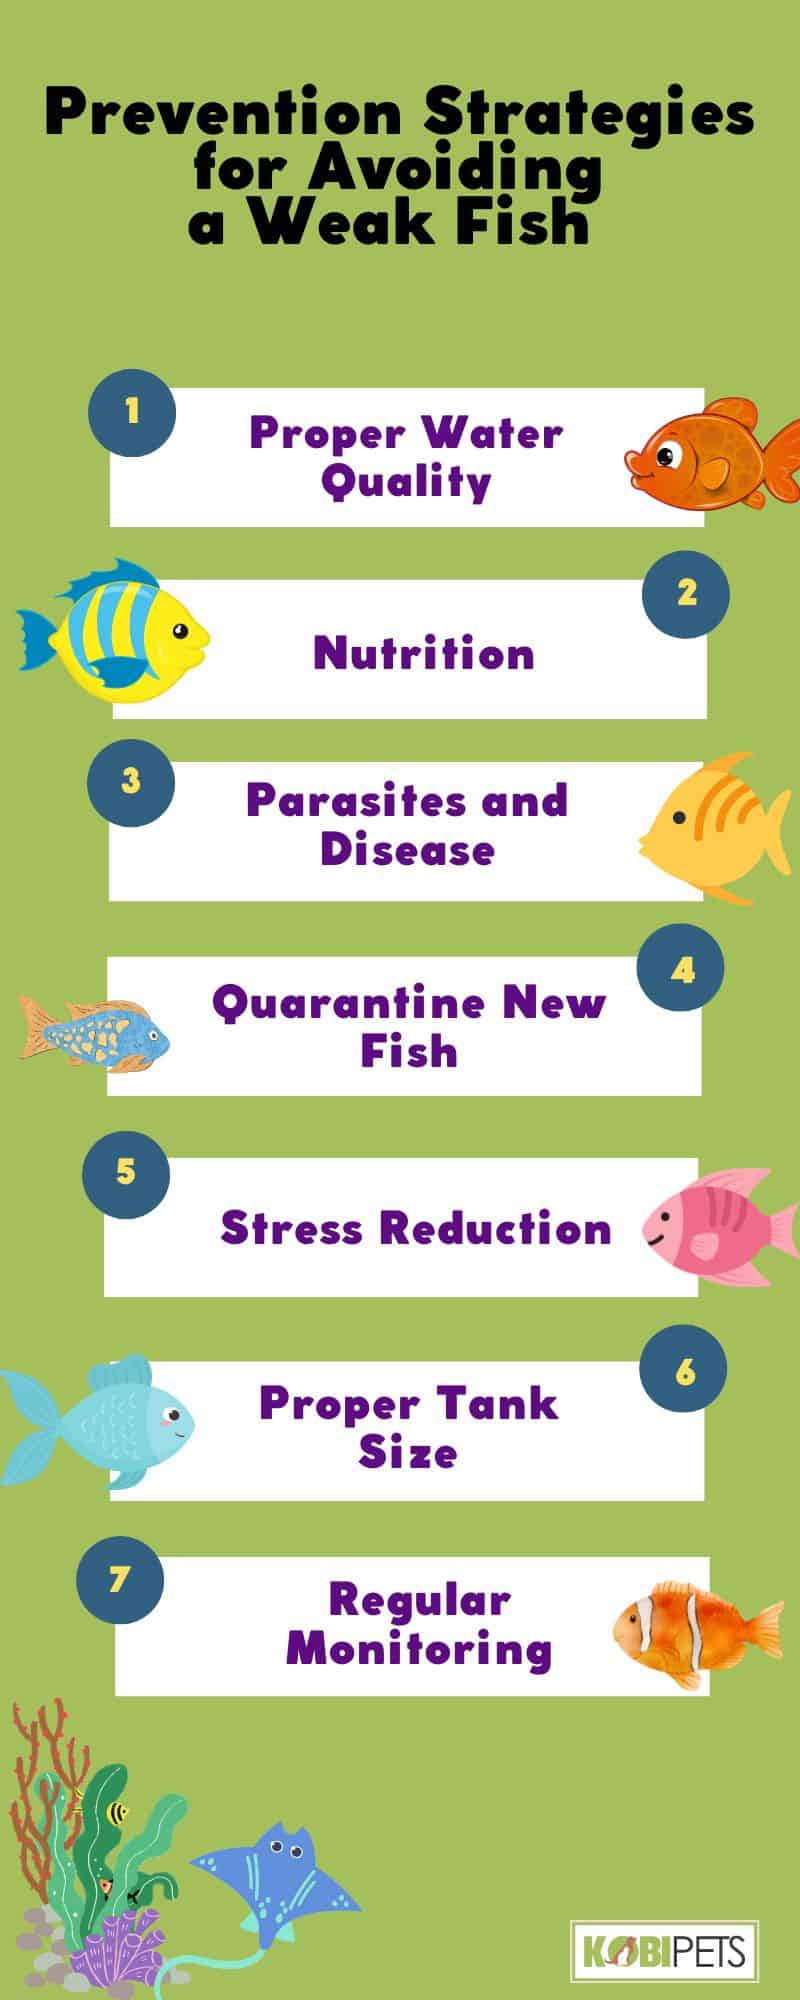 Prevention Strategies for Avoiding a Weak Fish 